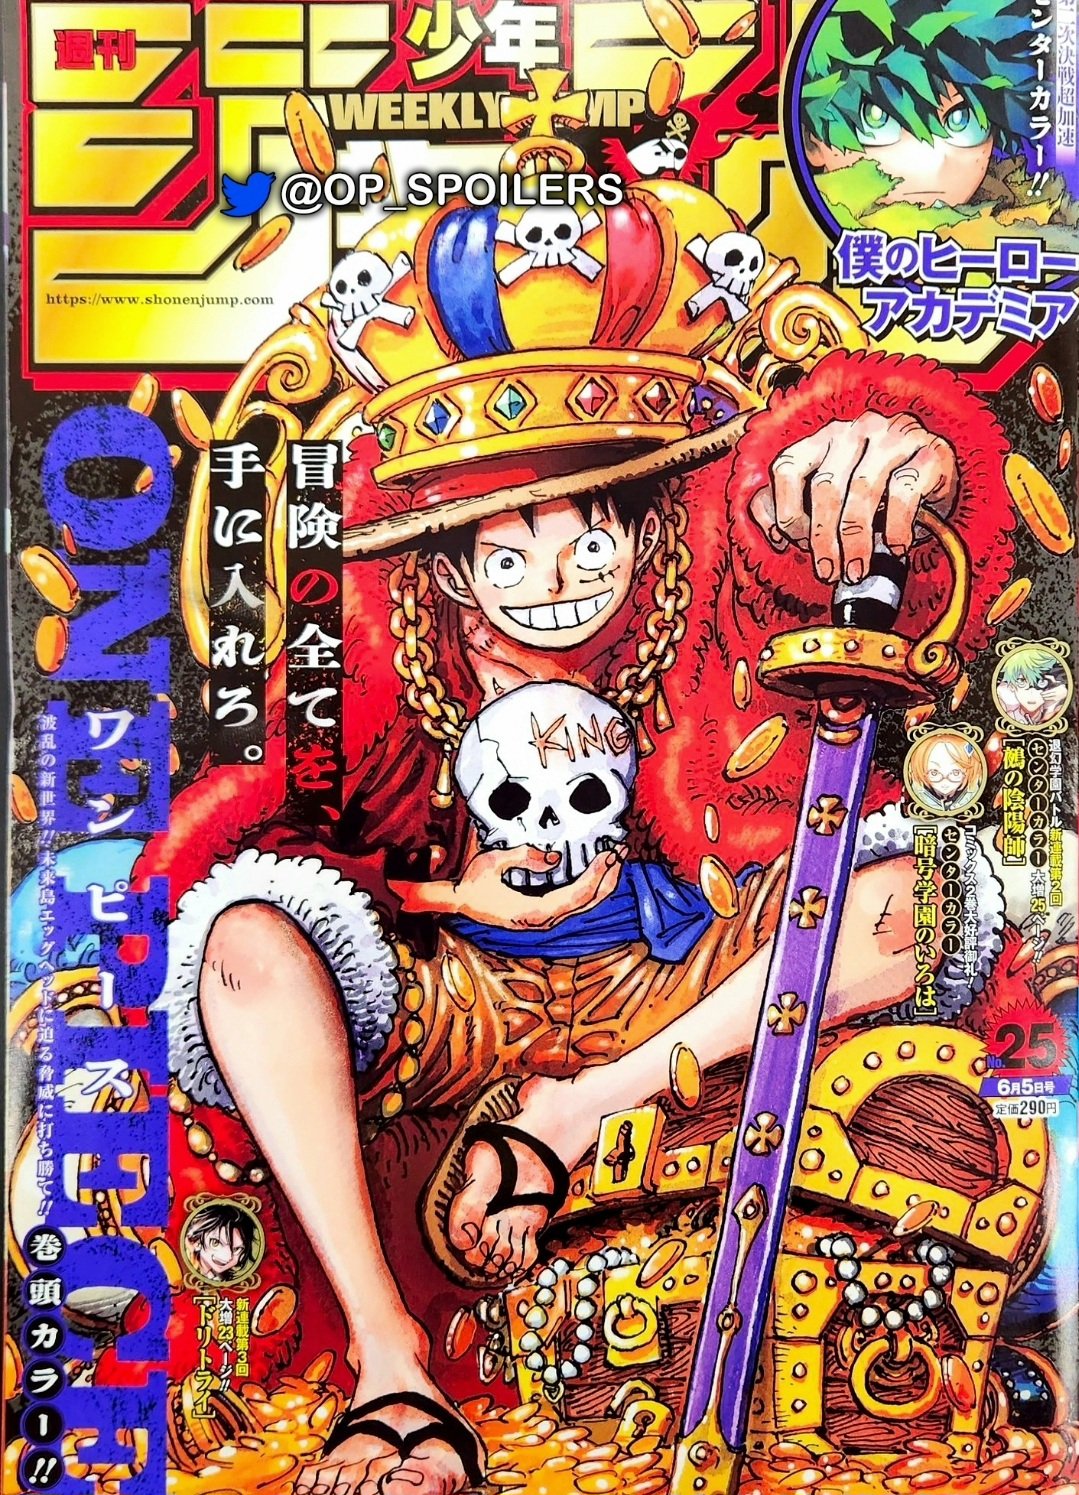 Spoiler] - 1037 Spoiler Metin ve Resimleri  One Piece Türkiye Fan Sayfası, One  Piece Türkçe Manga, One Piece Bölümler, One Piece Film